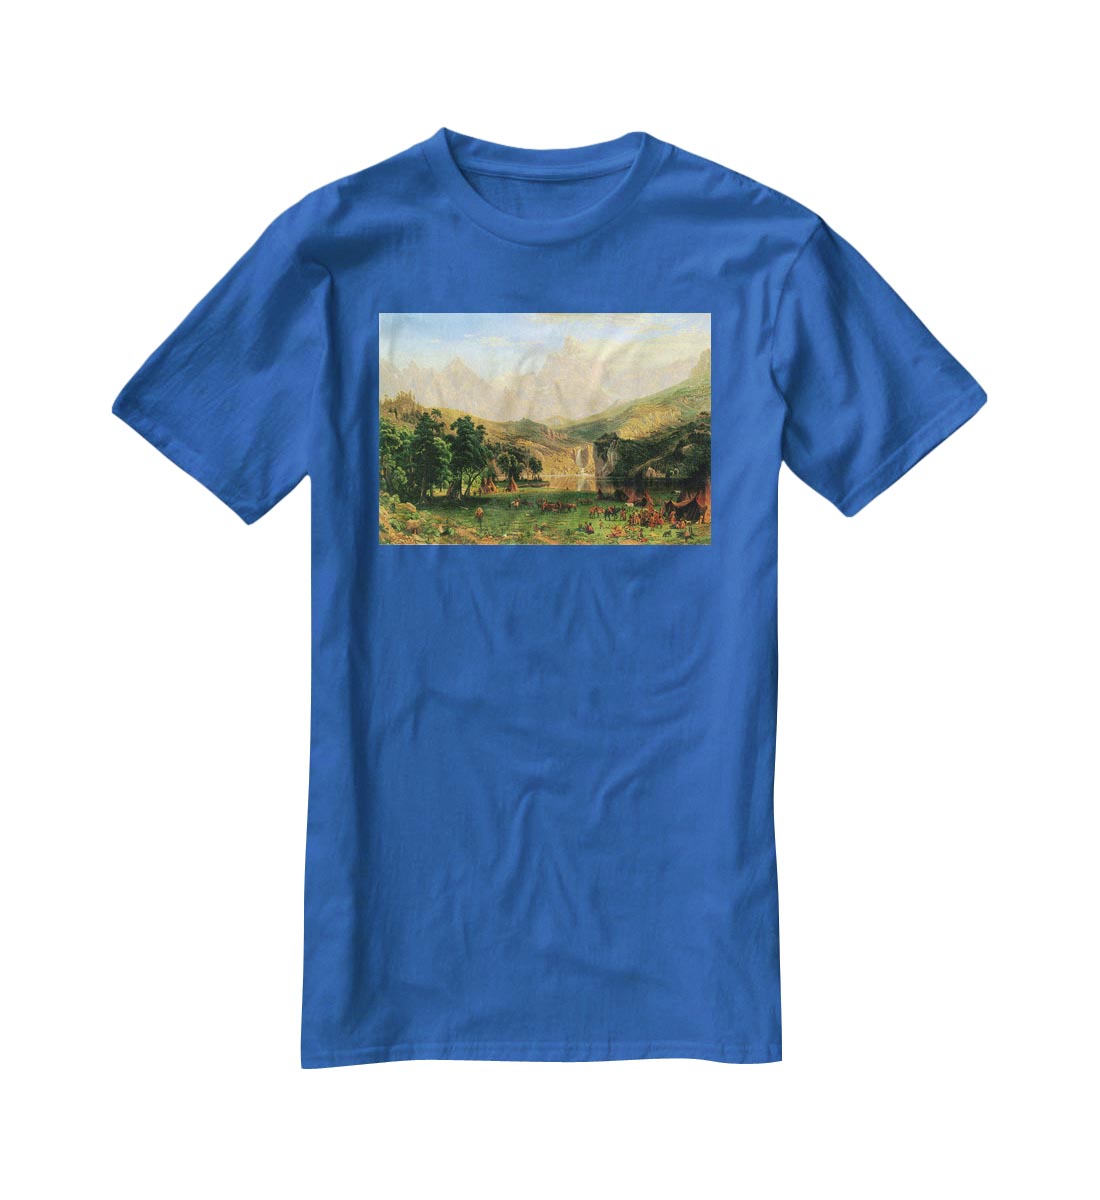 Rocky Montains at Lander's Peak by Bierstadt T-Shirt - Canvas Art Rocks - 2